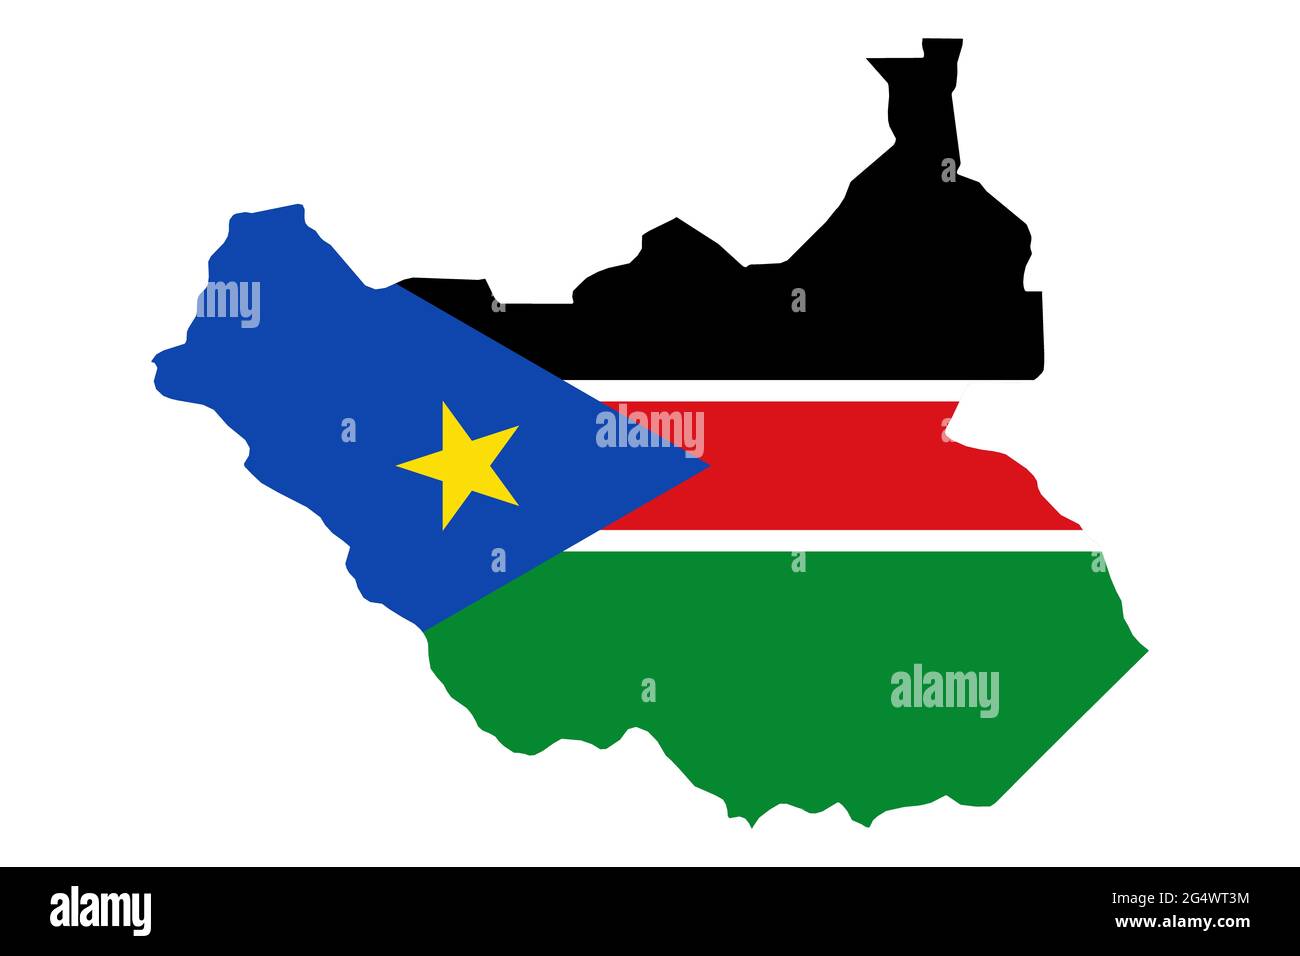 Mappa del Sud Sudan con la bandiera nazionale sovrapposta al paese. Grafica 3D che crea un'ombra sullo sfondo bianco Foto Stock